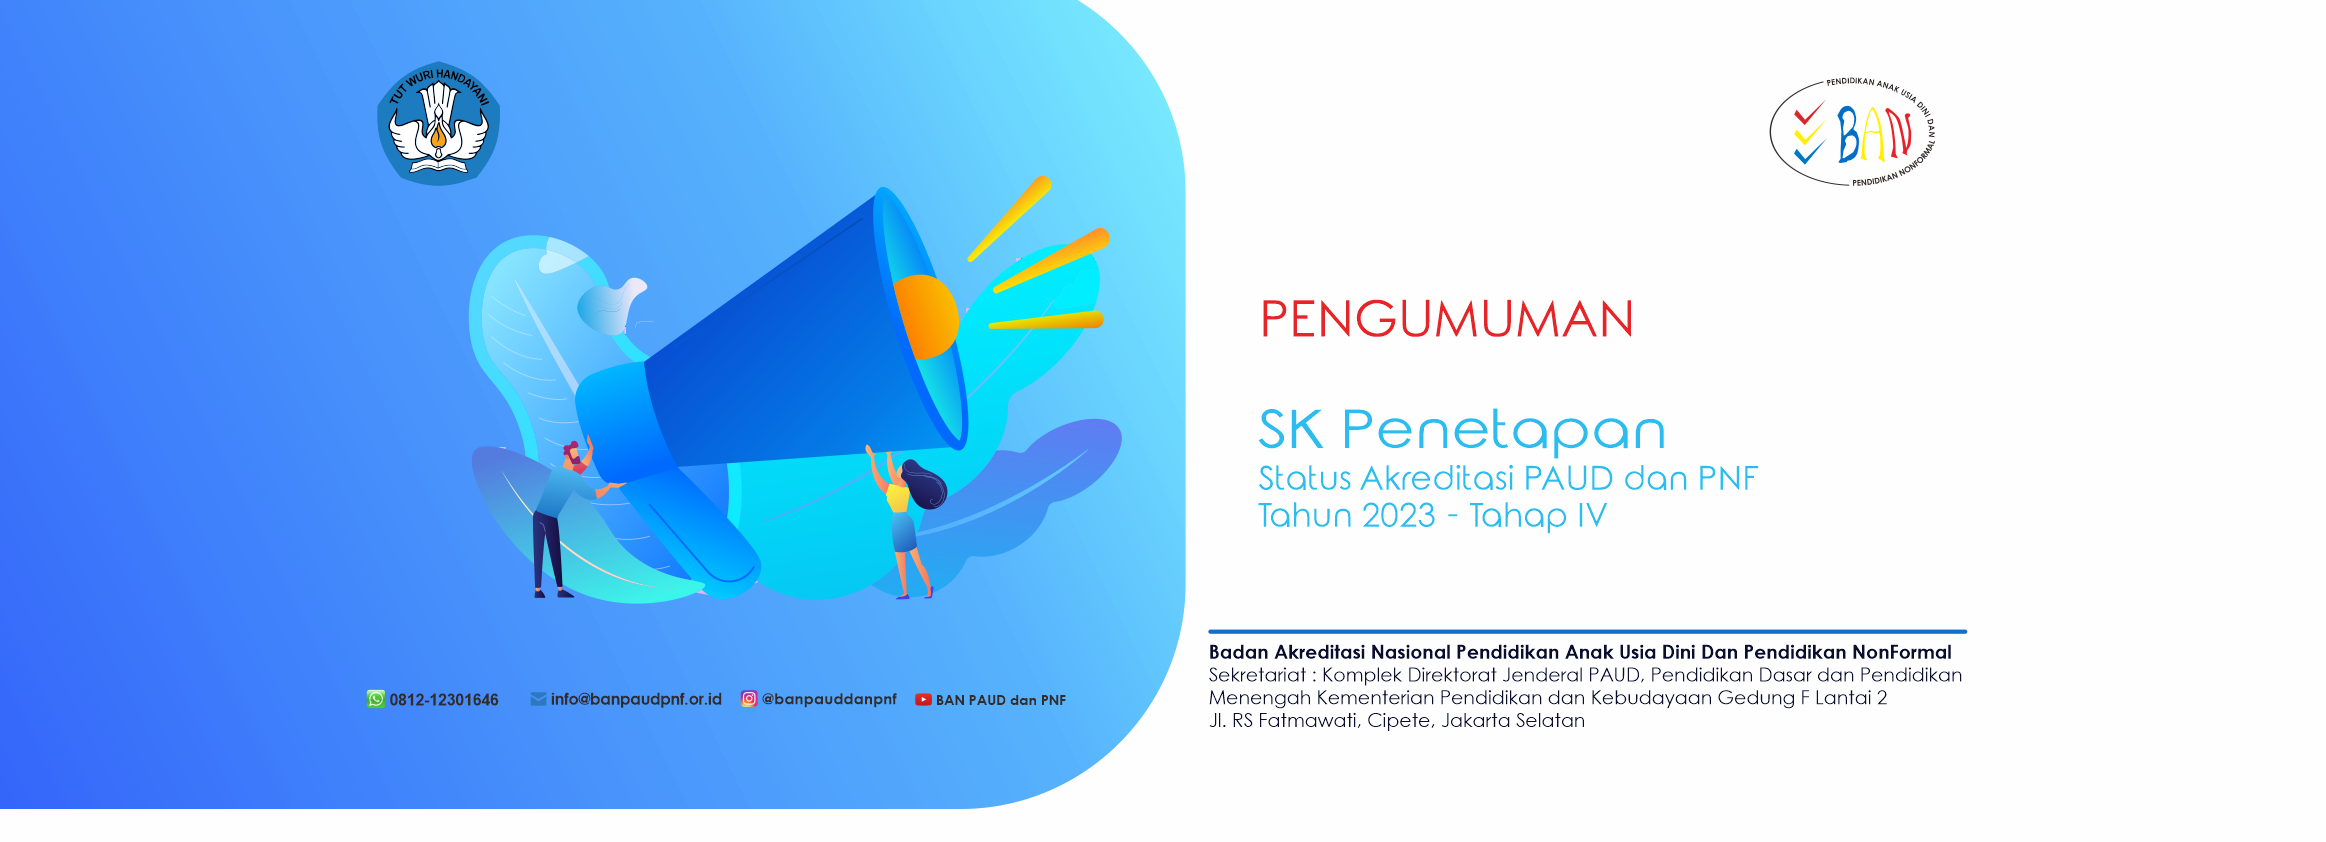 Pengumuman SK Penetapan Status Akreditasi PAUD dan_1707232651.png